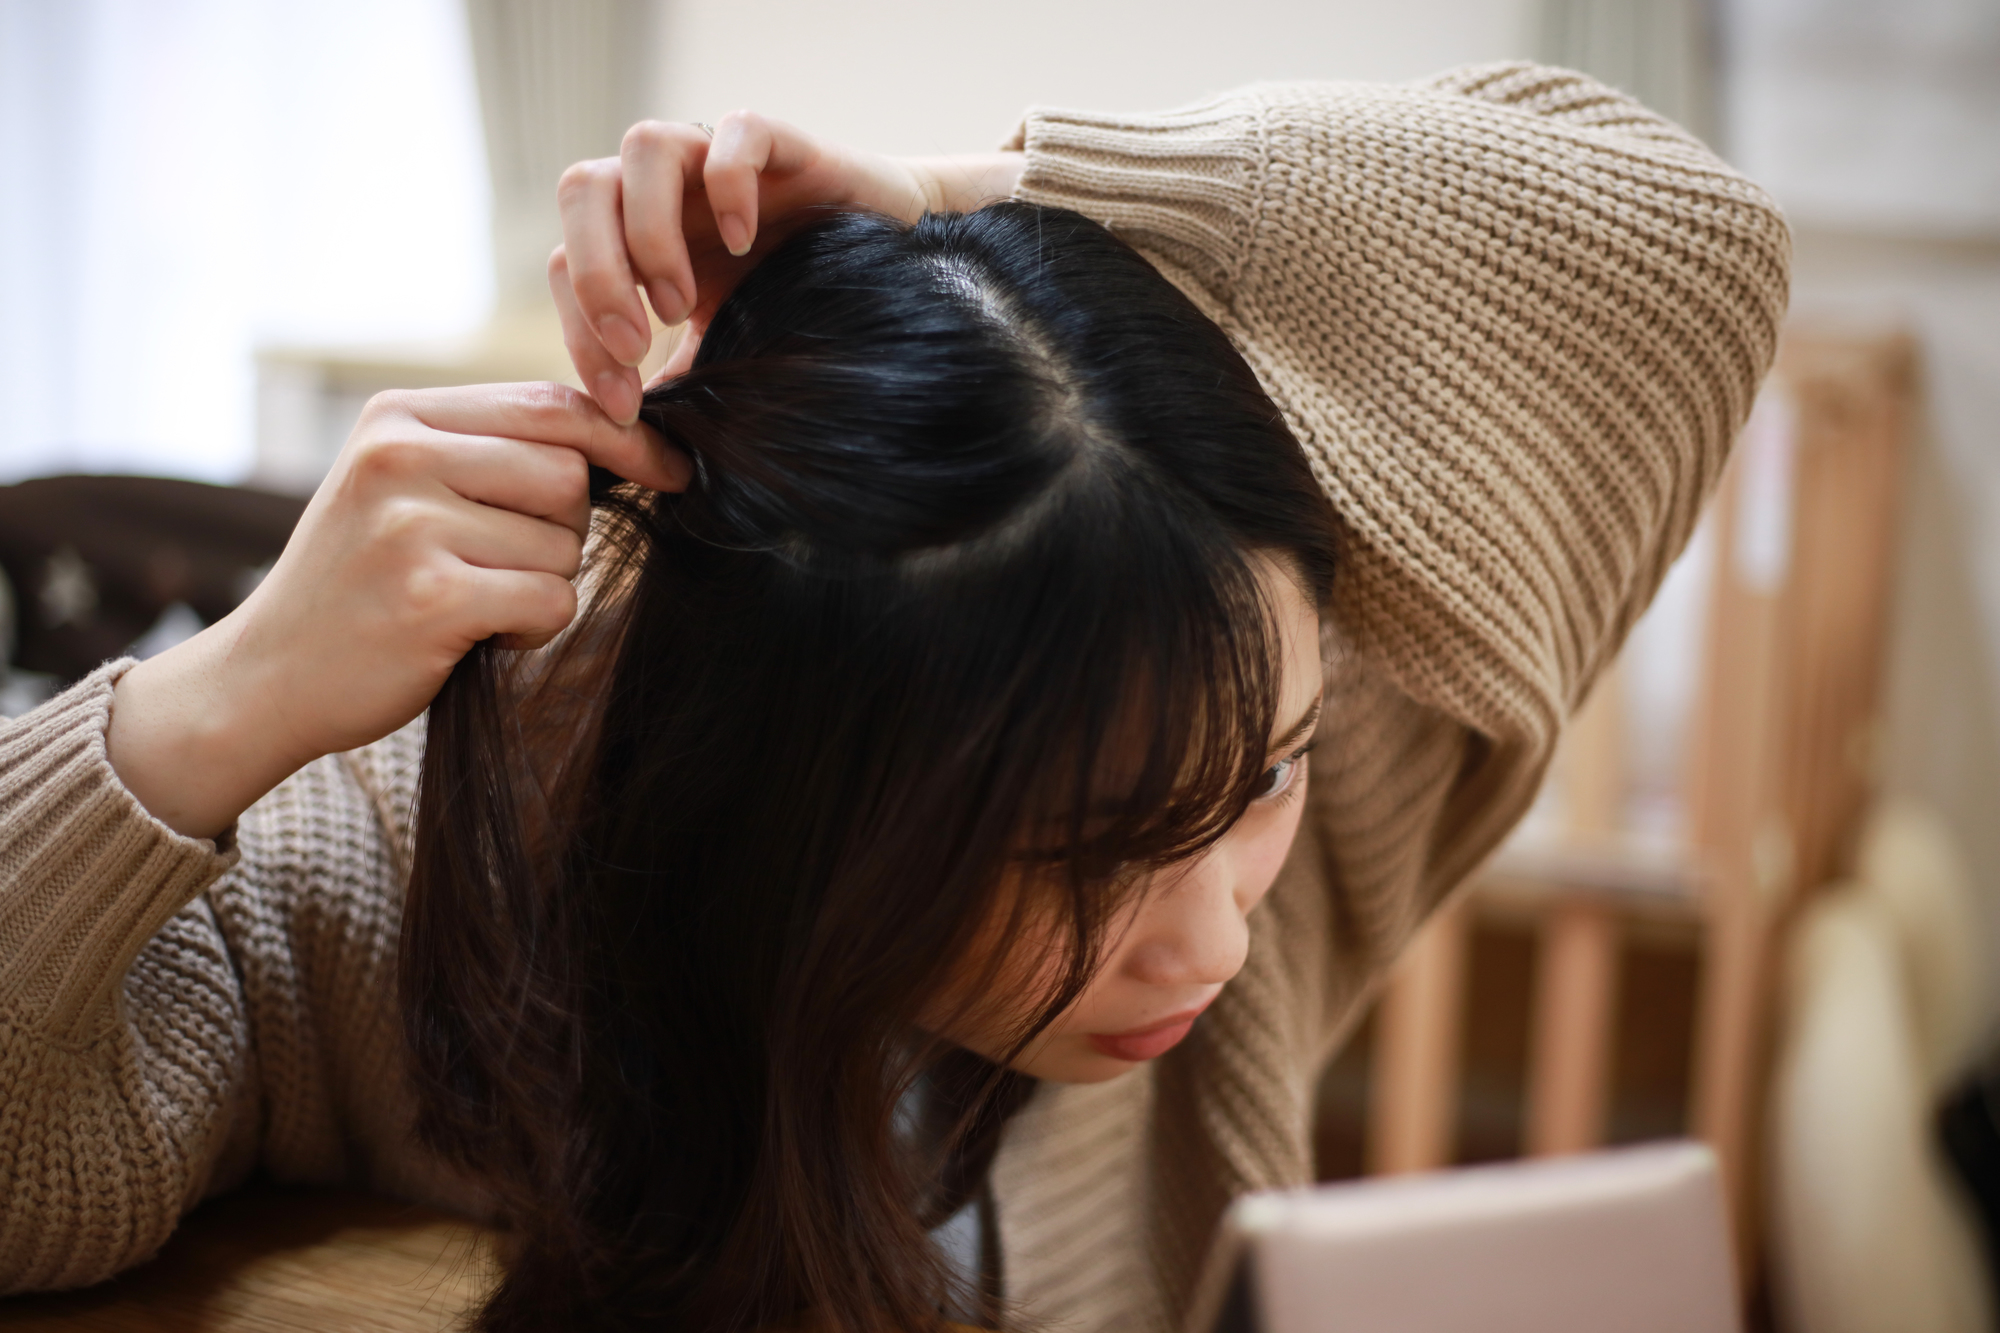 ストレスによる抜け毛に悩む女性が急増中？対策はある？